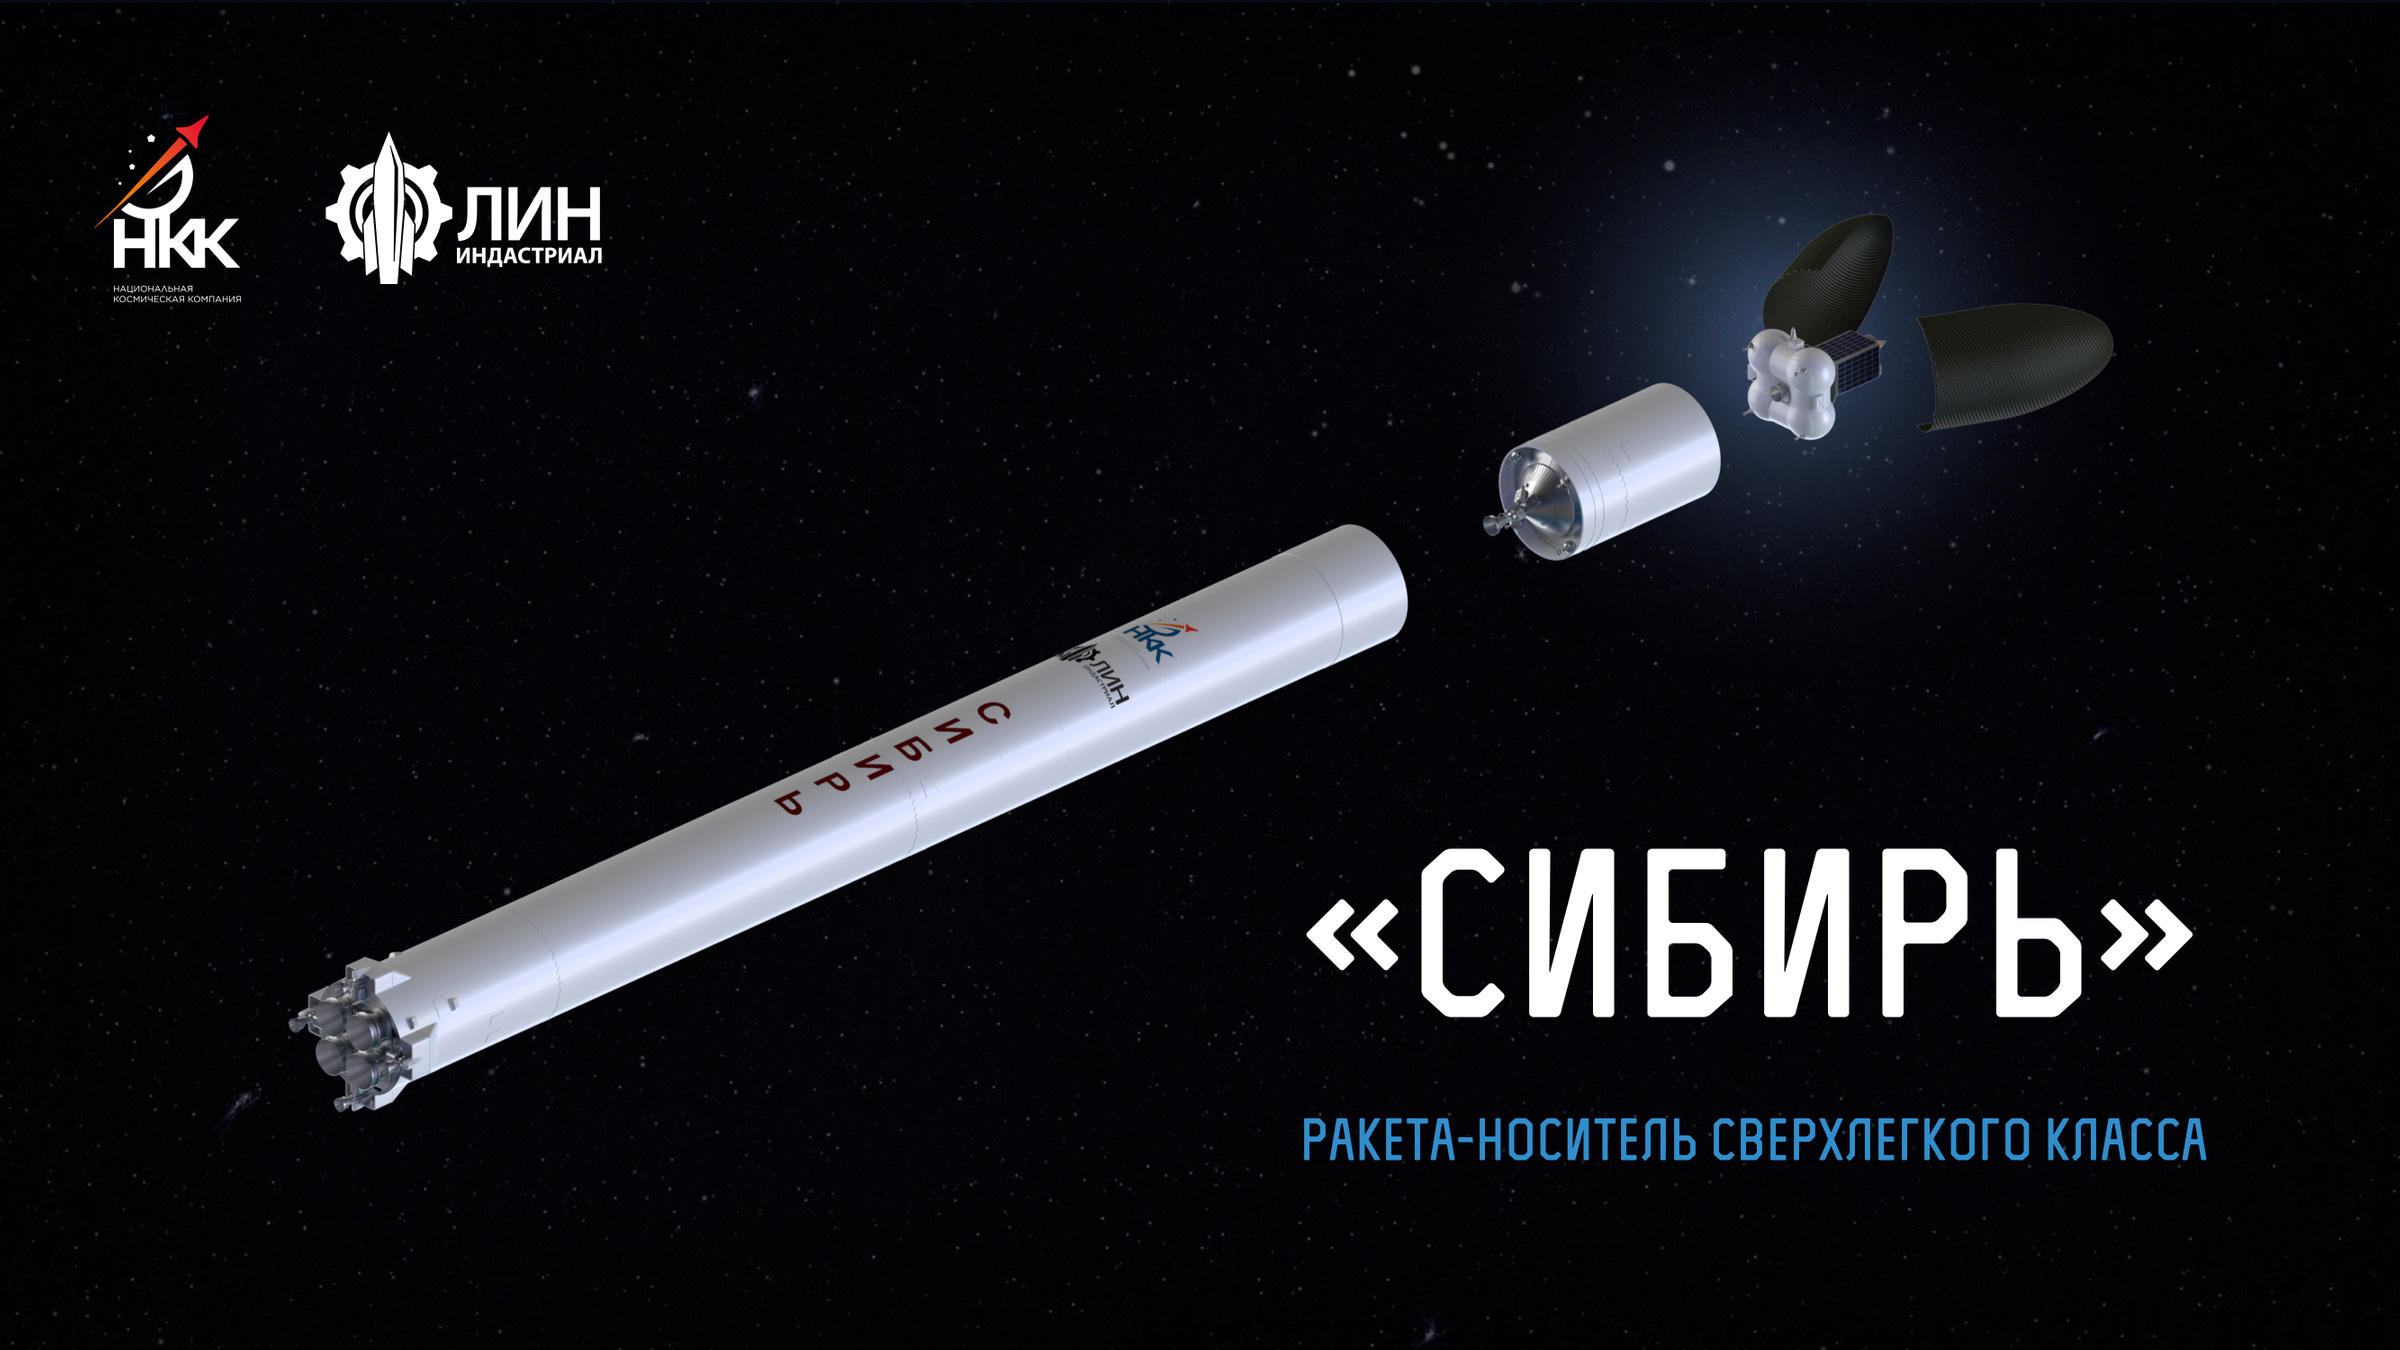 Ракета "Сибирь". Фото © ООО "Лин индастриал"